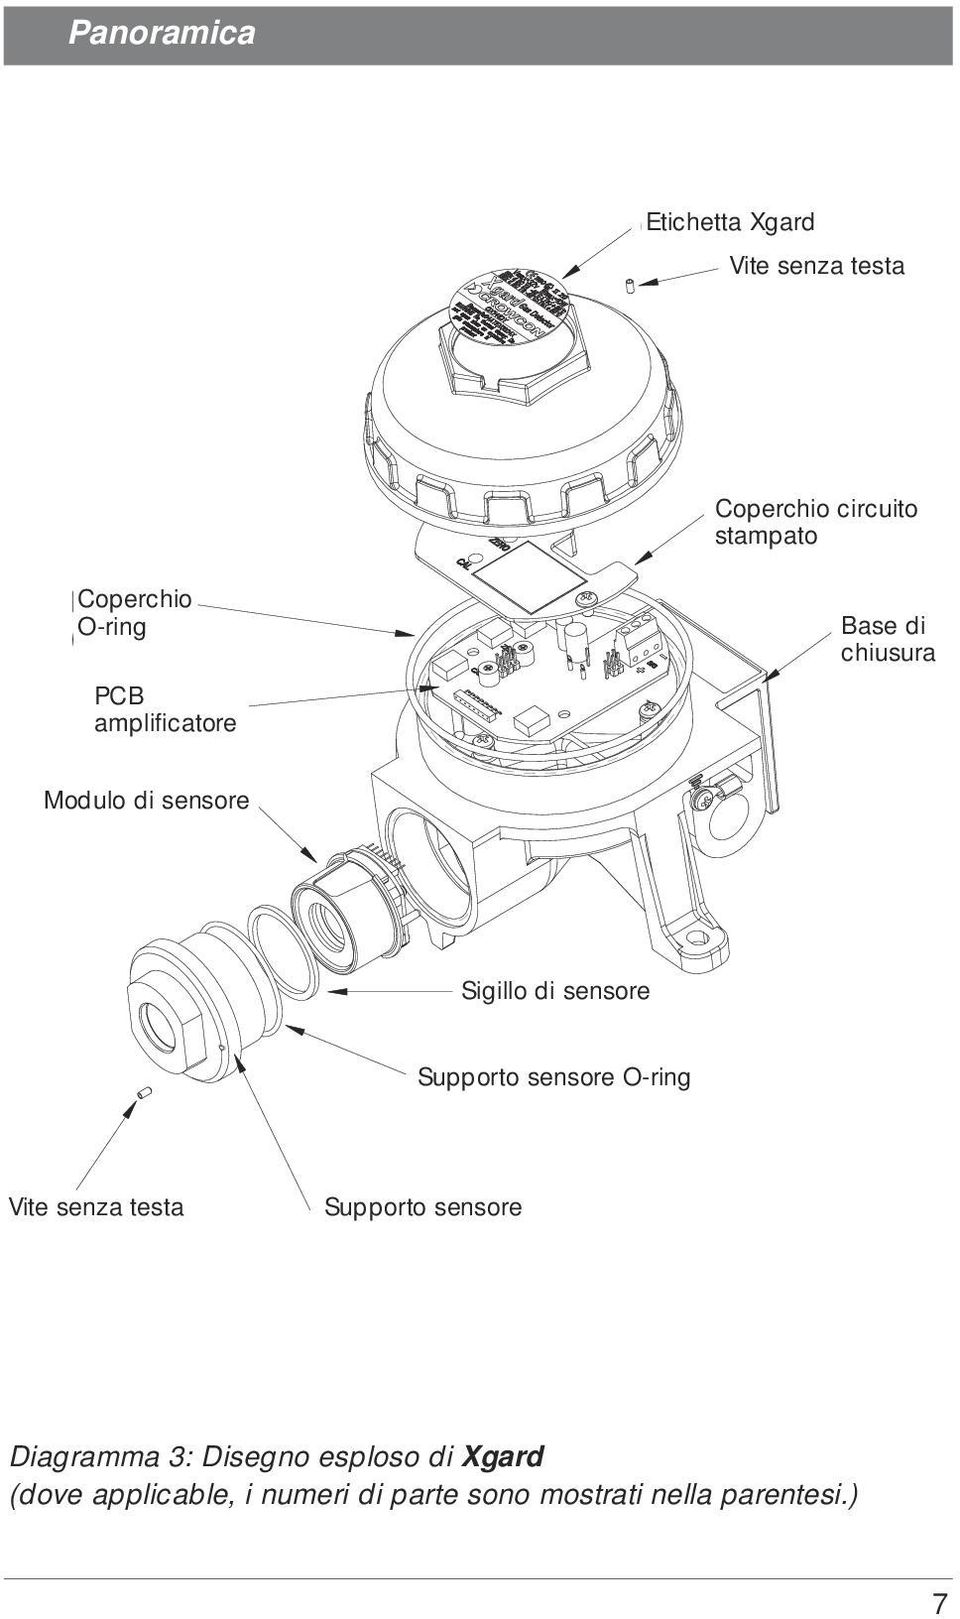 Sensor Sigillo di seal sensore (M04885) Sensor Supporto retainer sensore O-ring O-ring (M04828) rub Vite screw senza testa